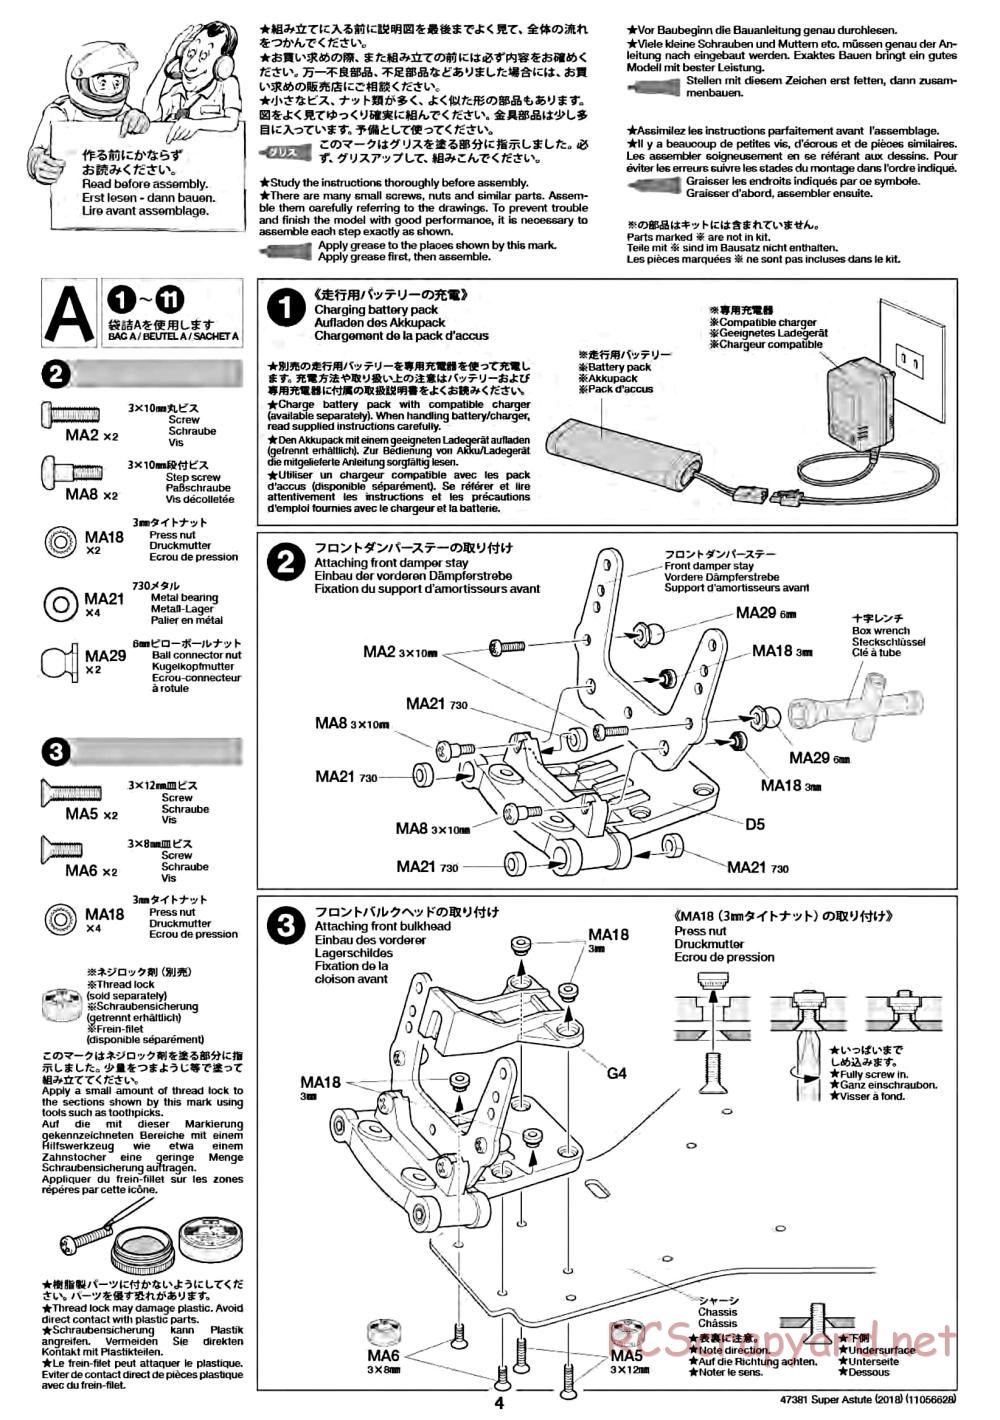 Tamiya - Super Astute (2018) Chassis - Manual - Page 4